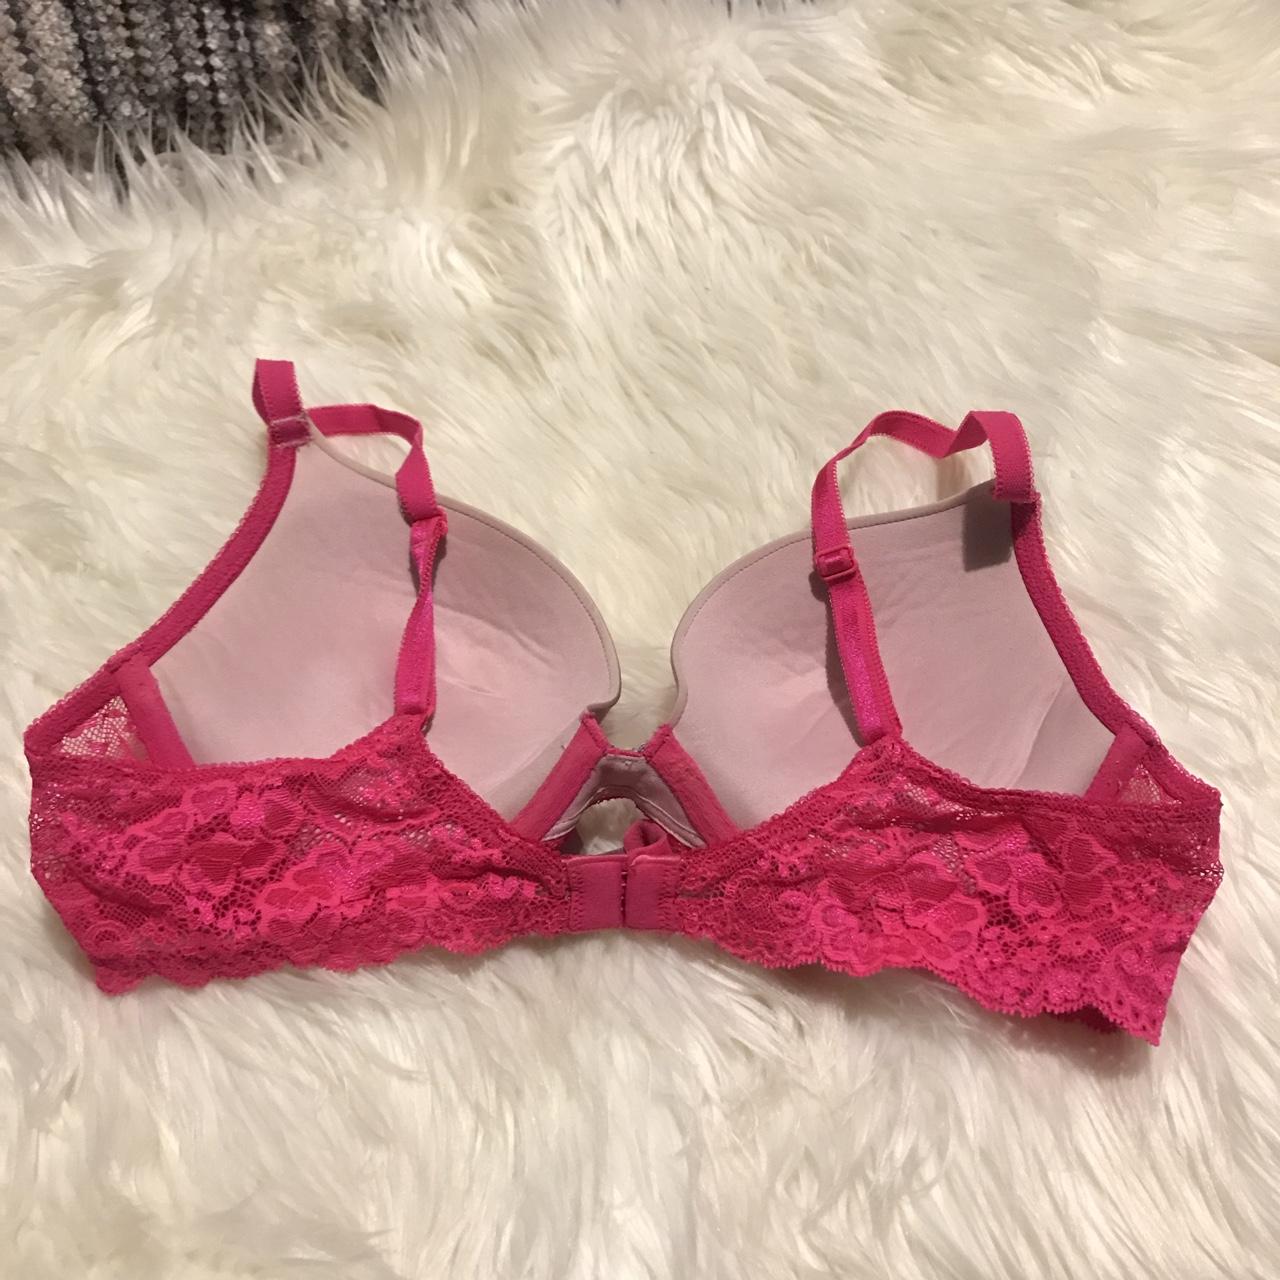 Victoria’s Secret hot pink rhinestone bra in the